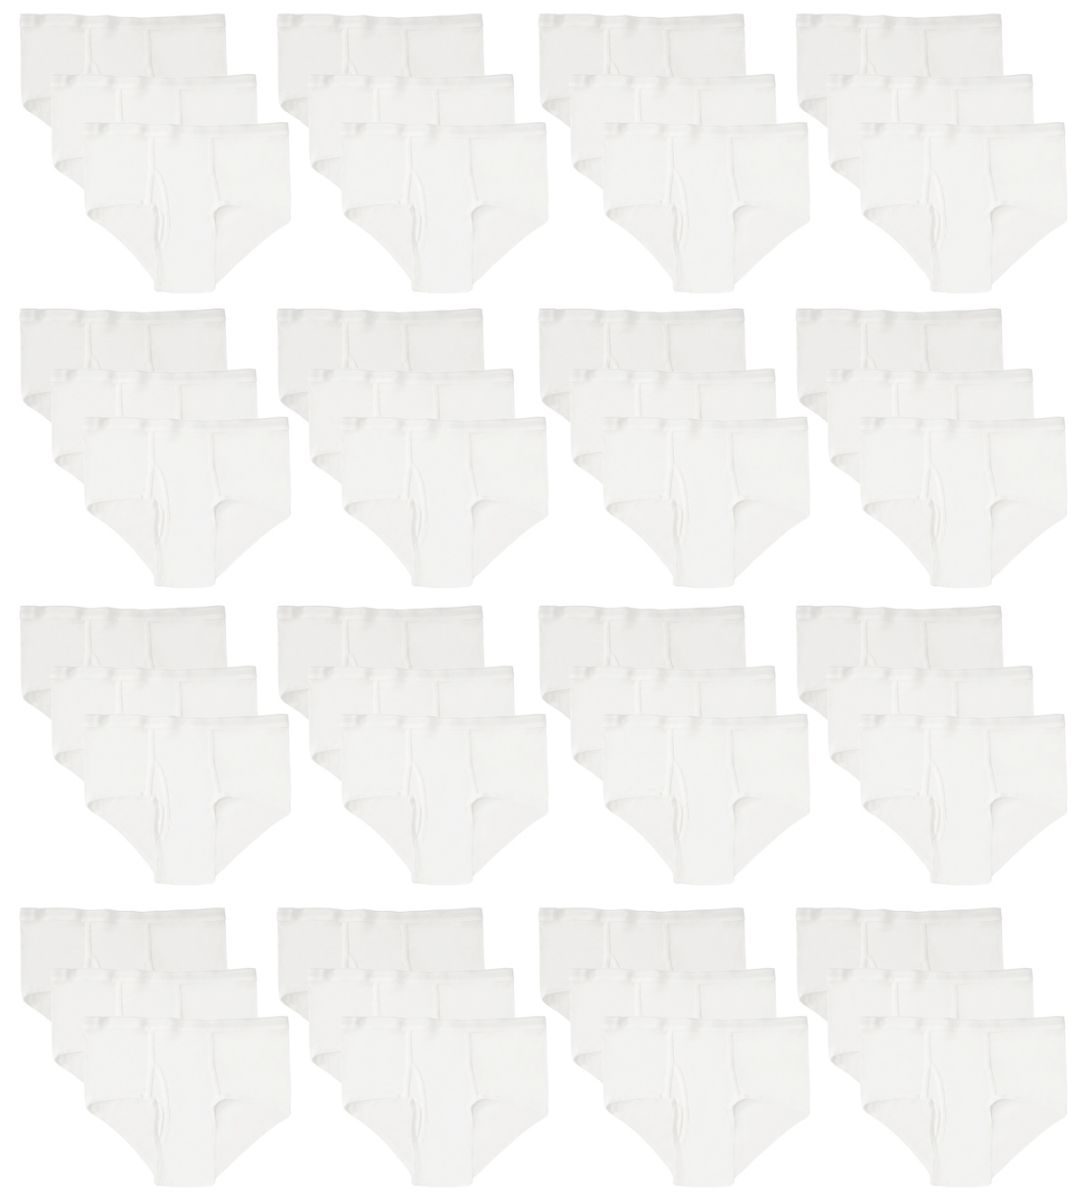 24 Wholesale Boys Cotton Underwear Briefs In White, Size Xlarge